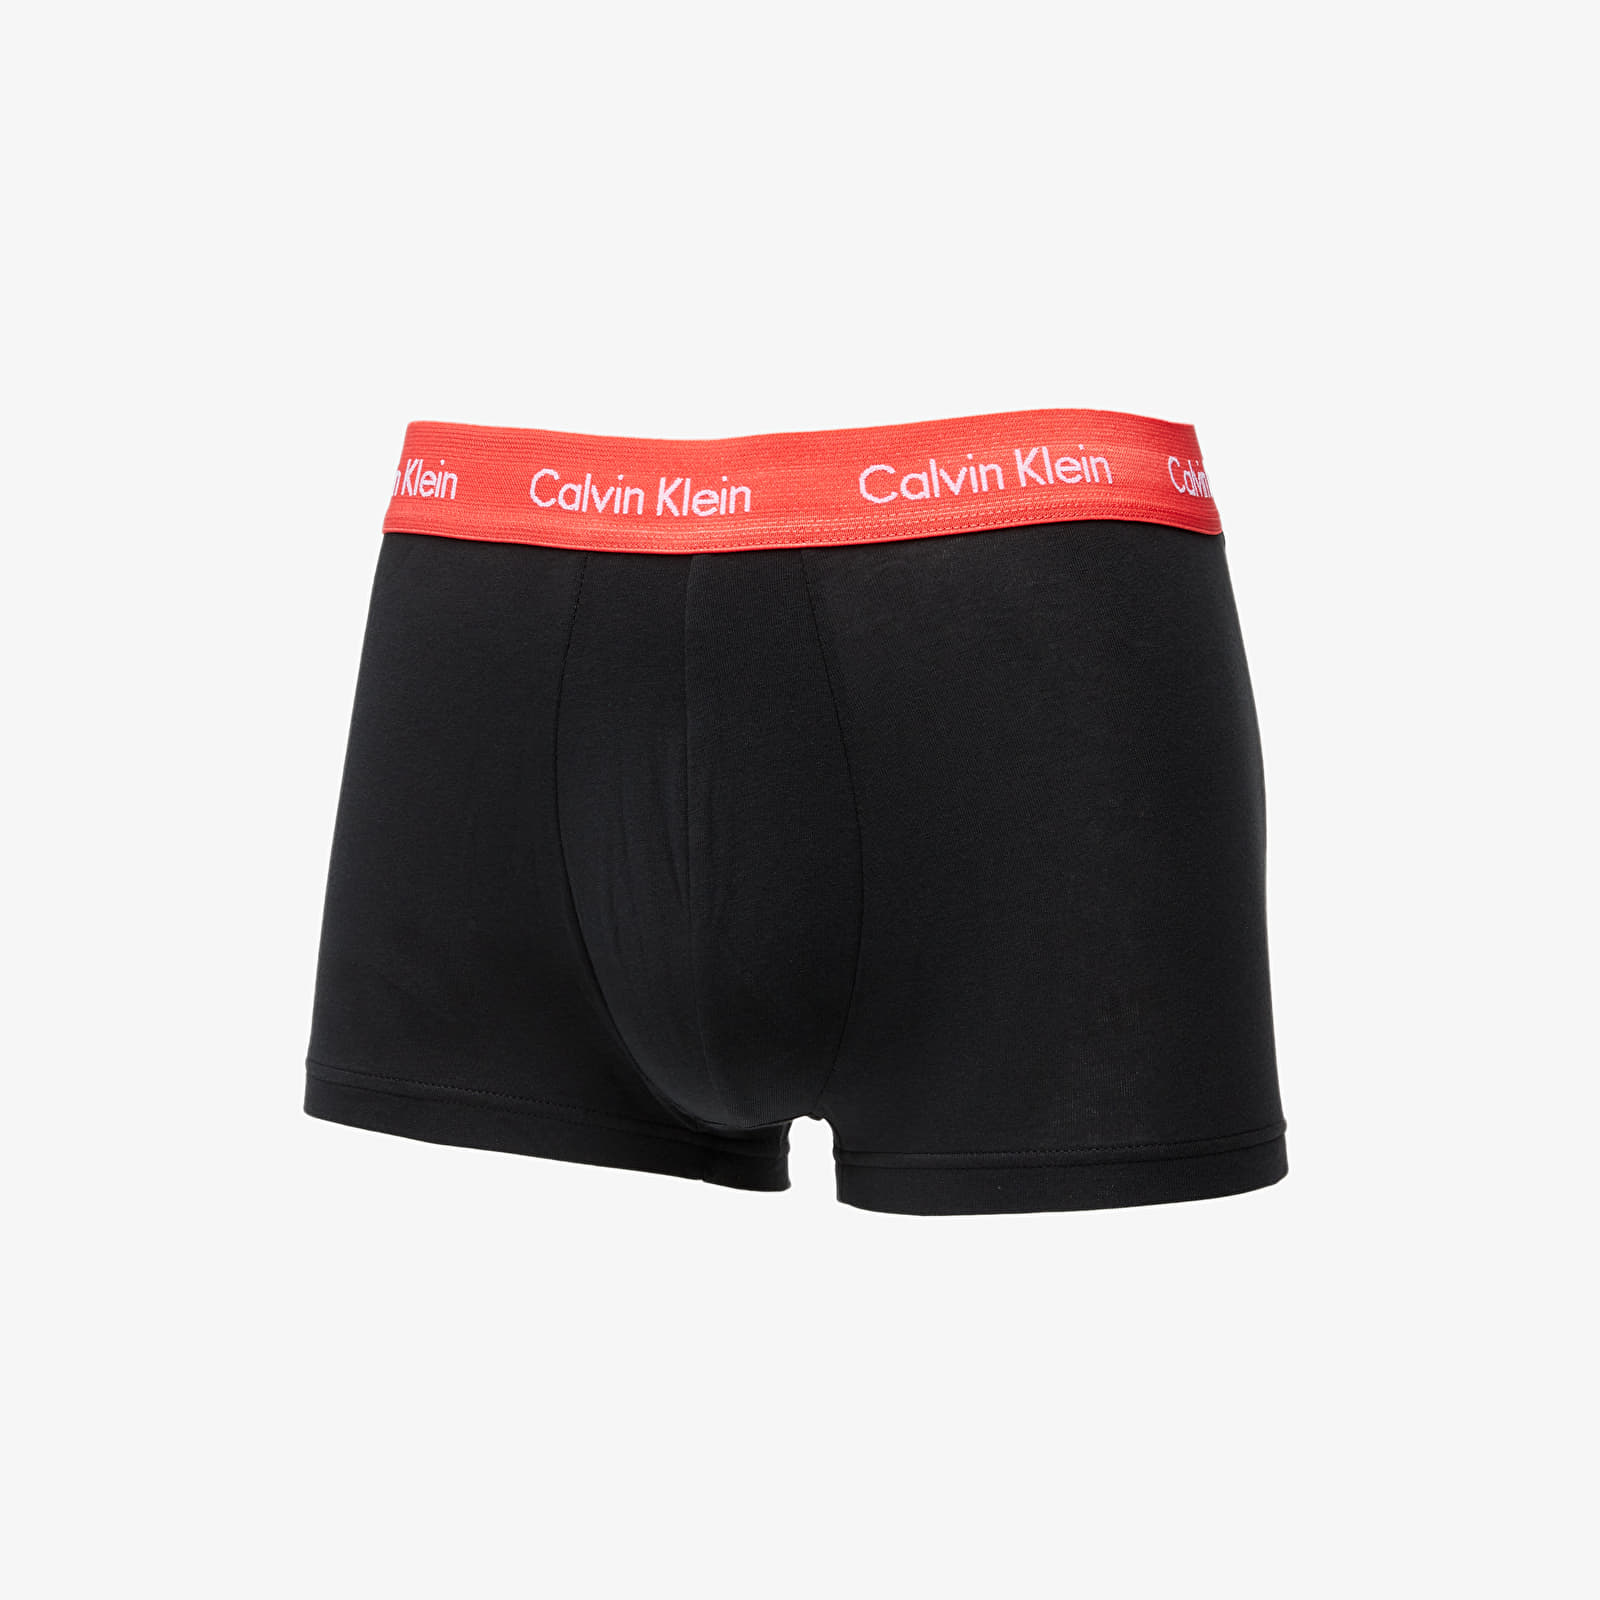 Sous-vêtements pour hommes Calvin Klein Low Rise Trunks 3 Pack Black/ Coral/ Phantom